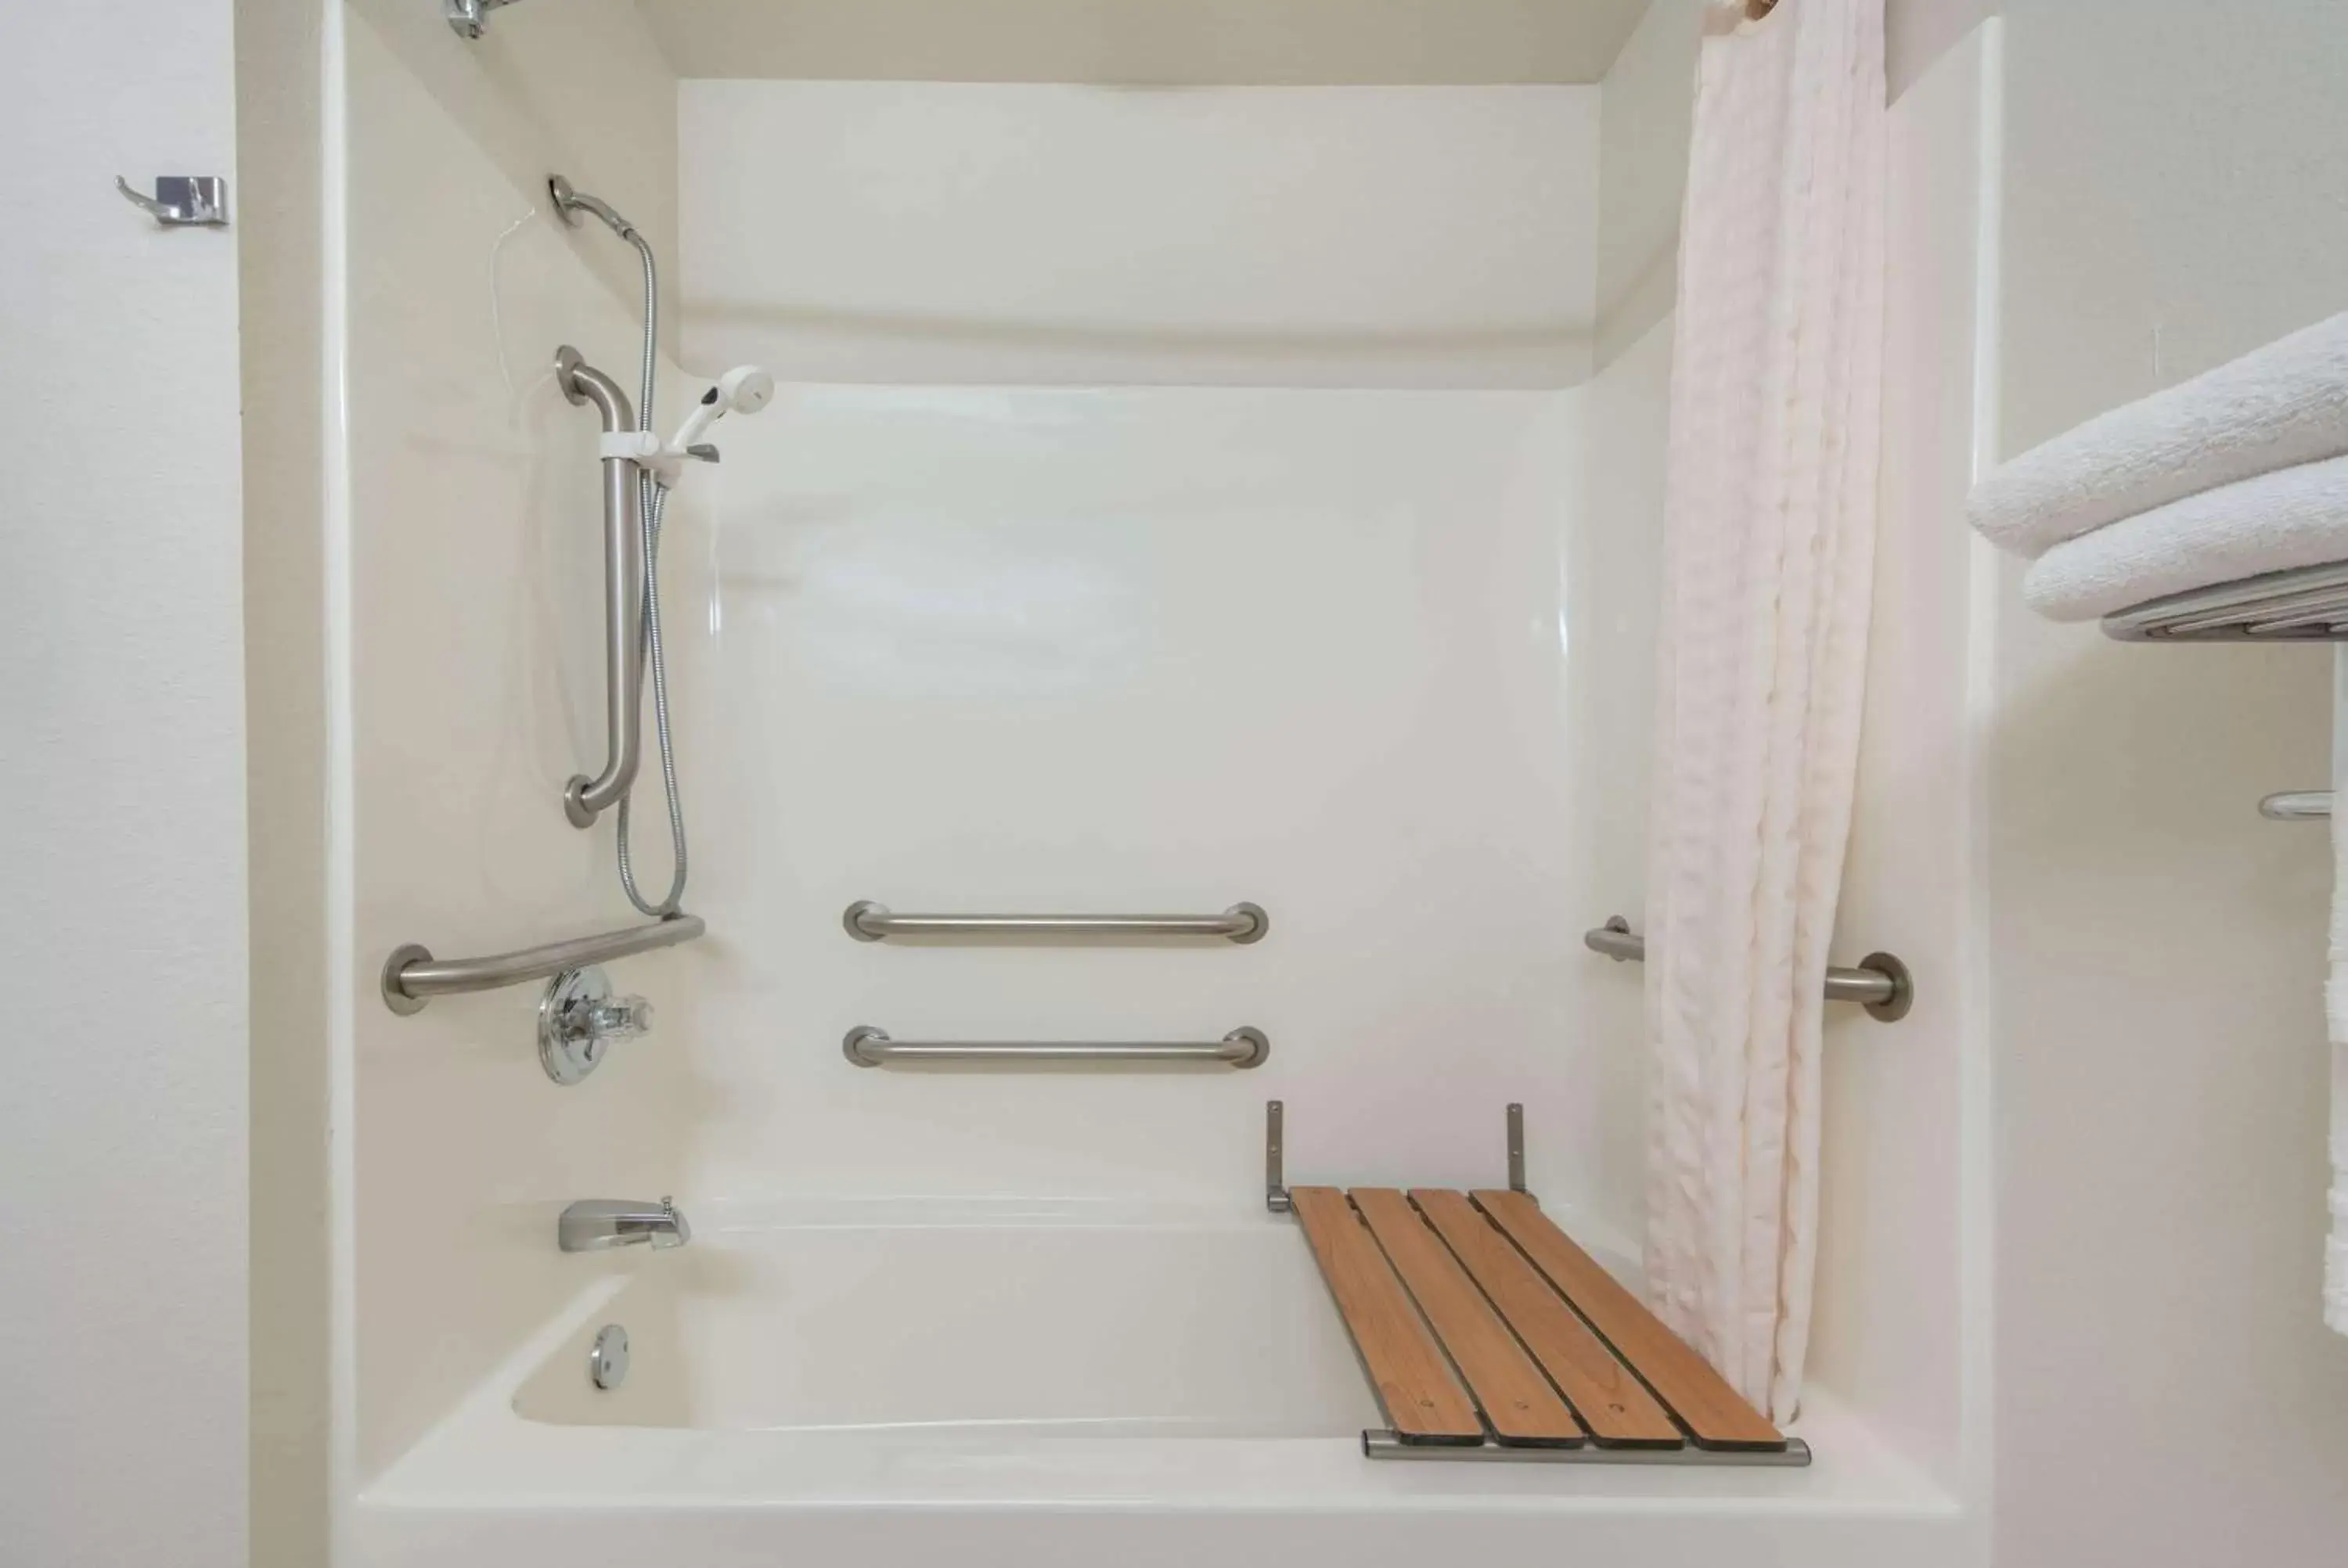 Bathroom in Microtel Inn & Suites by Wyndham Altus